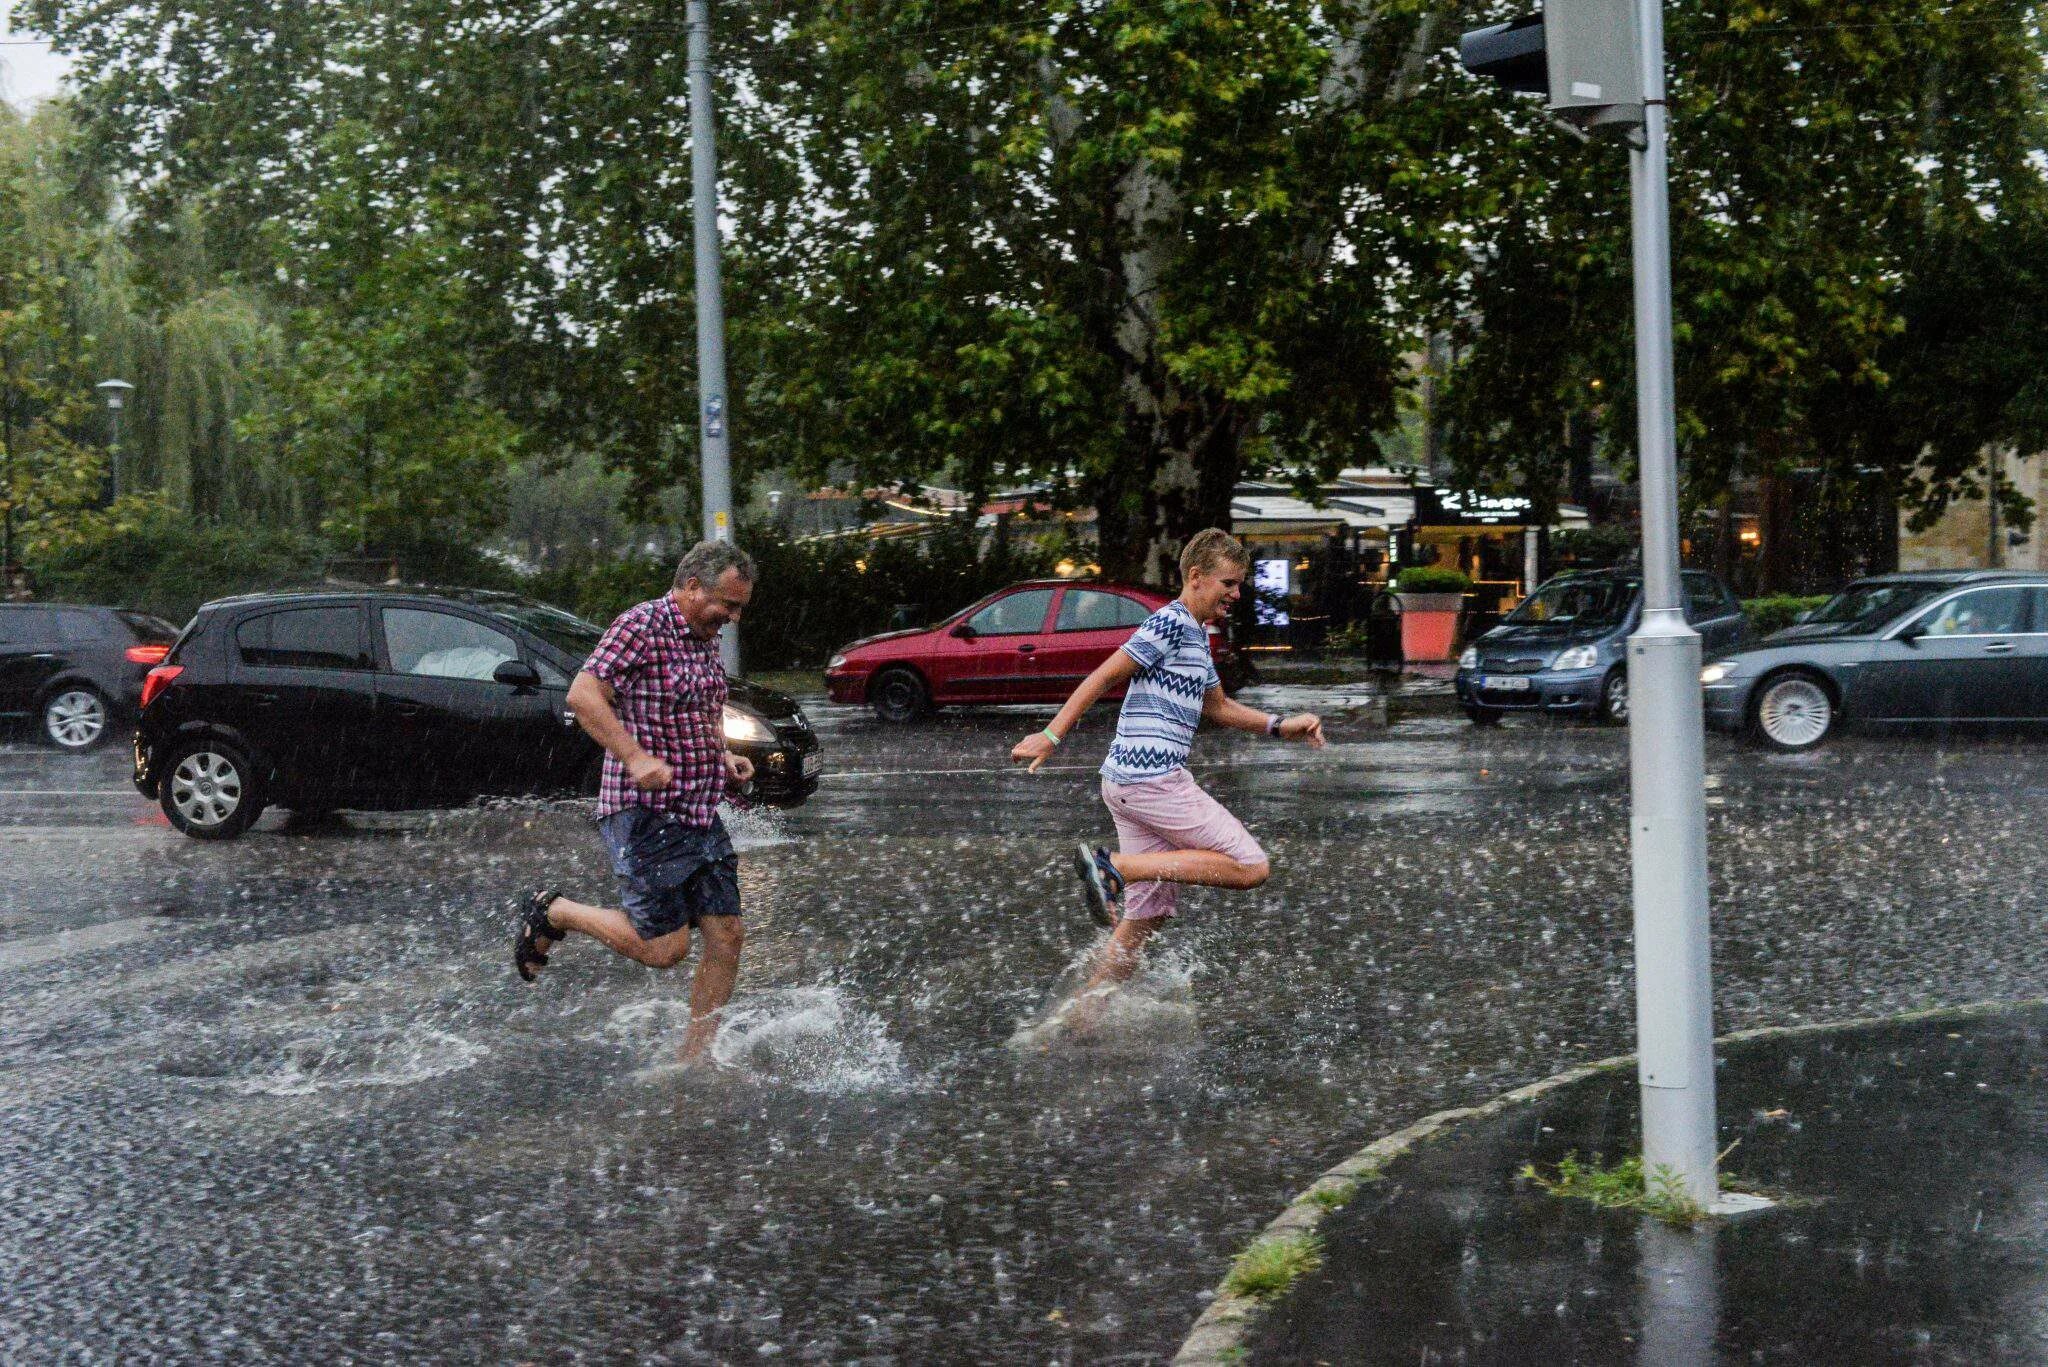 Игры в дождливую погоду. Ветер спасает от жары на улице. Тура (Венгрия) дождливый. Люди спасаются от ветра и дождя.